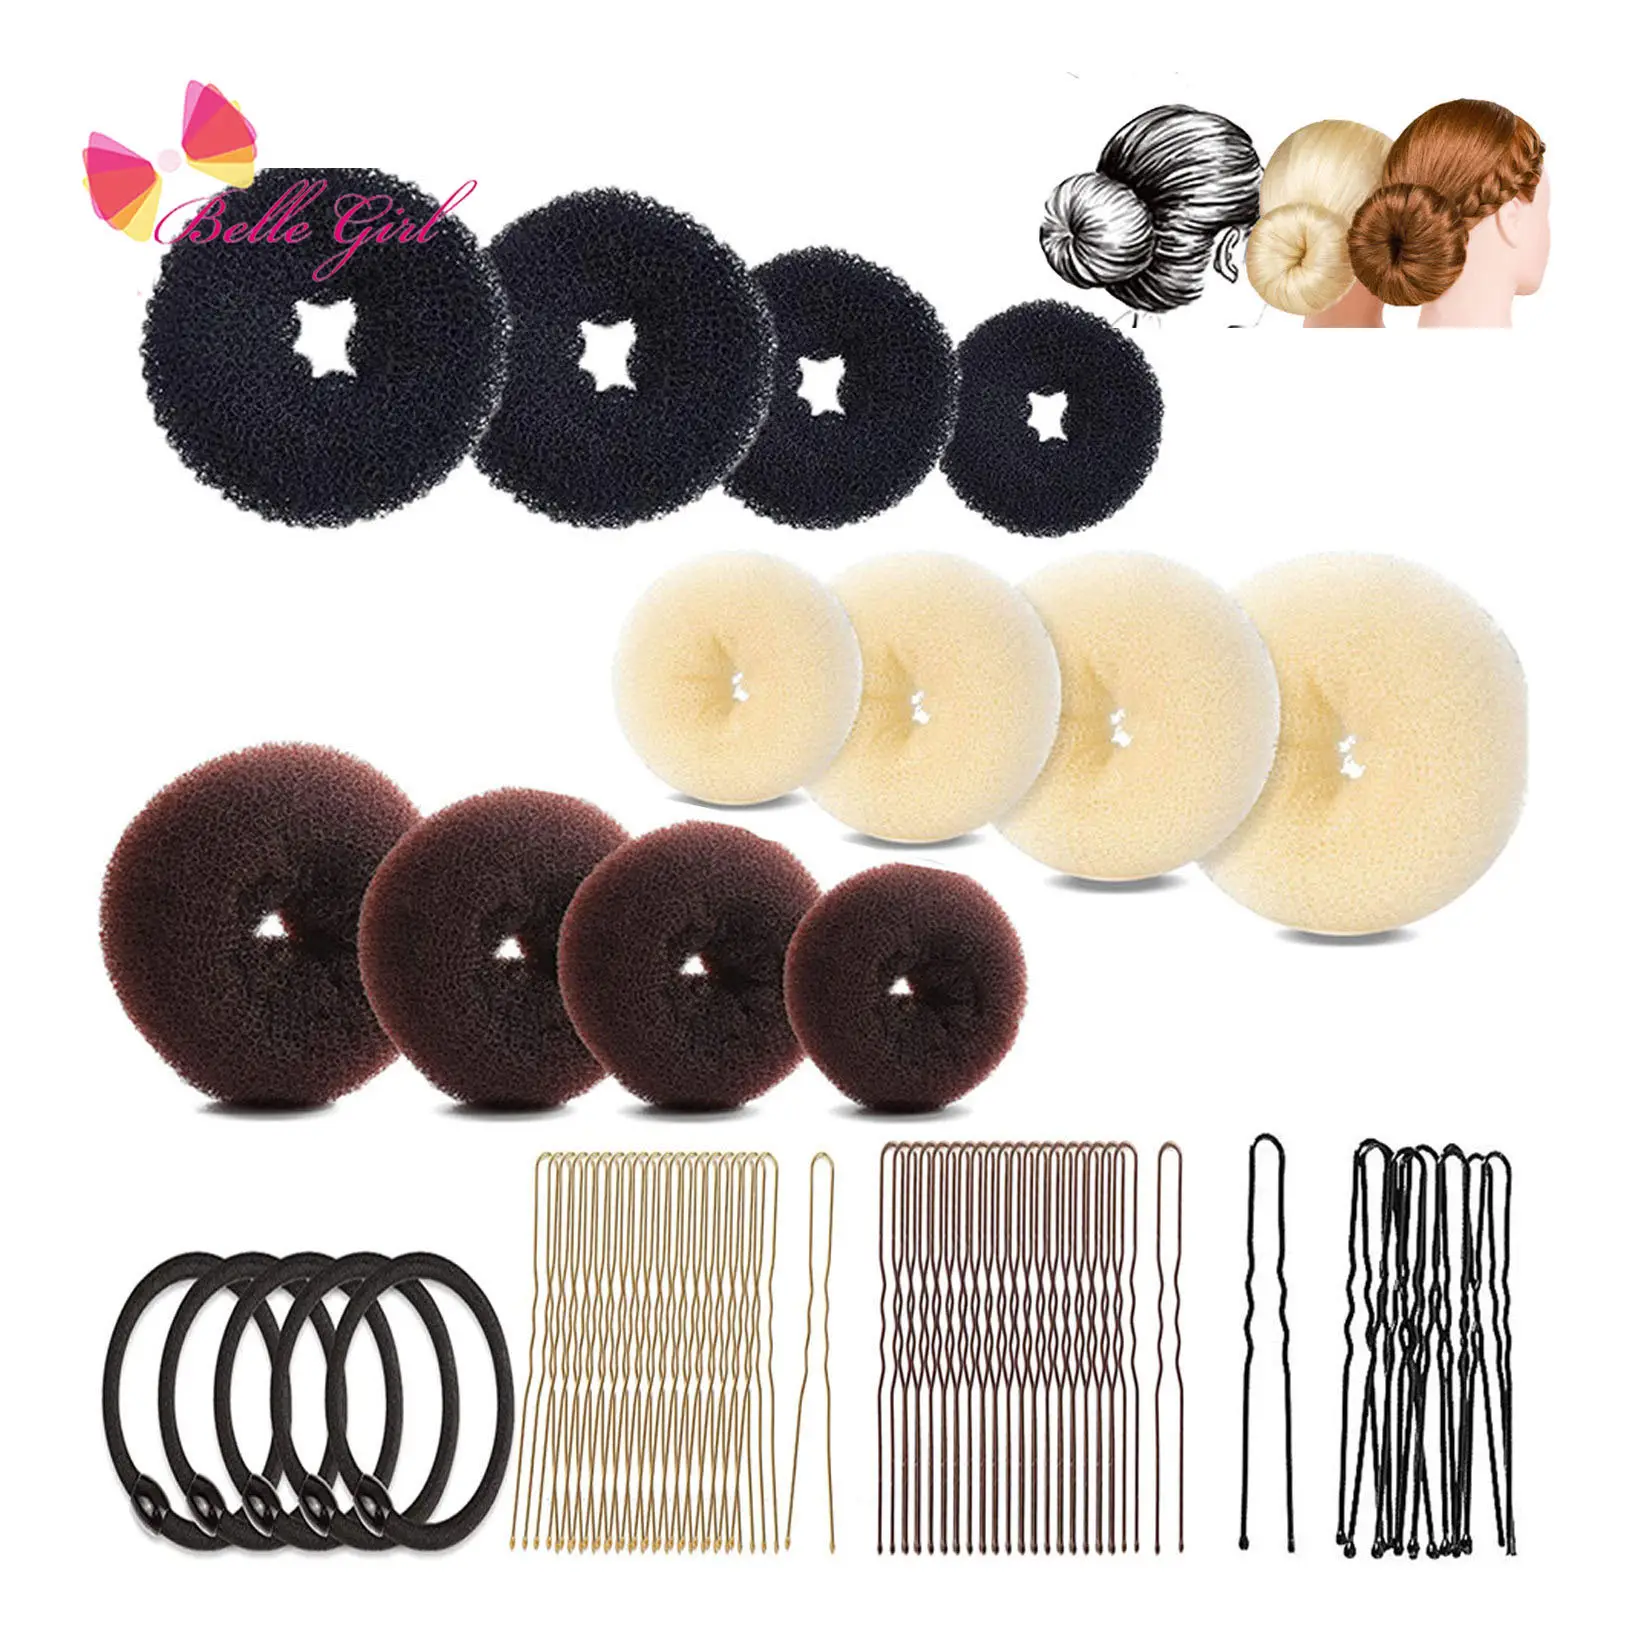 BELLEWORLD fábrica caliente 19 piezas accesorios para el cabello conjunto donut Maker banda elástica moño de pelo donut y horquillas para el cabello para las mujeres